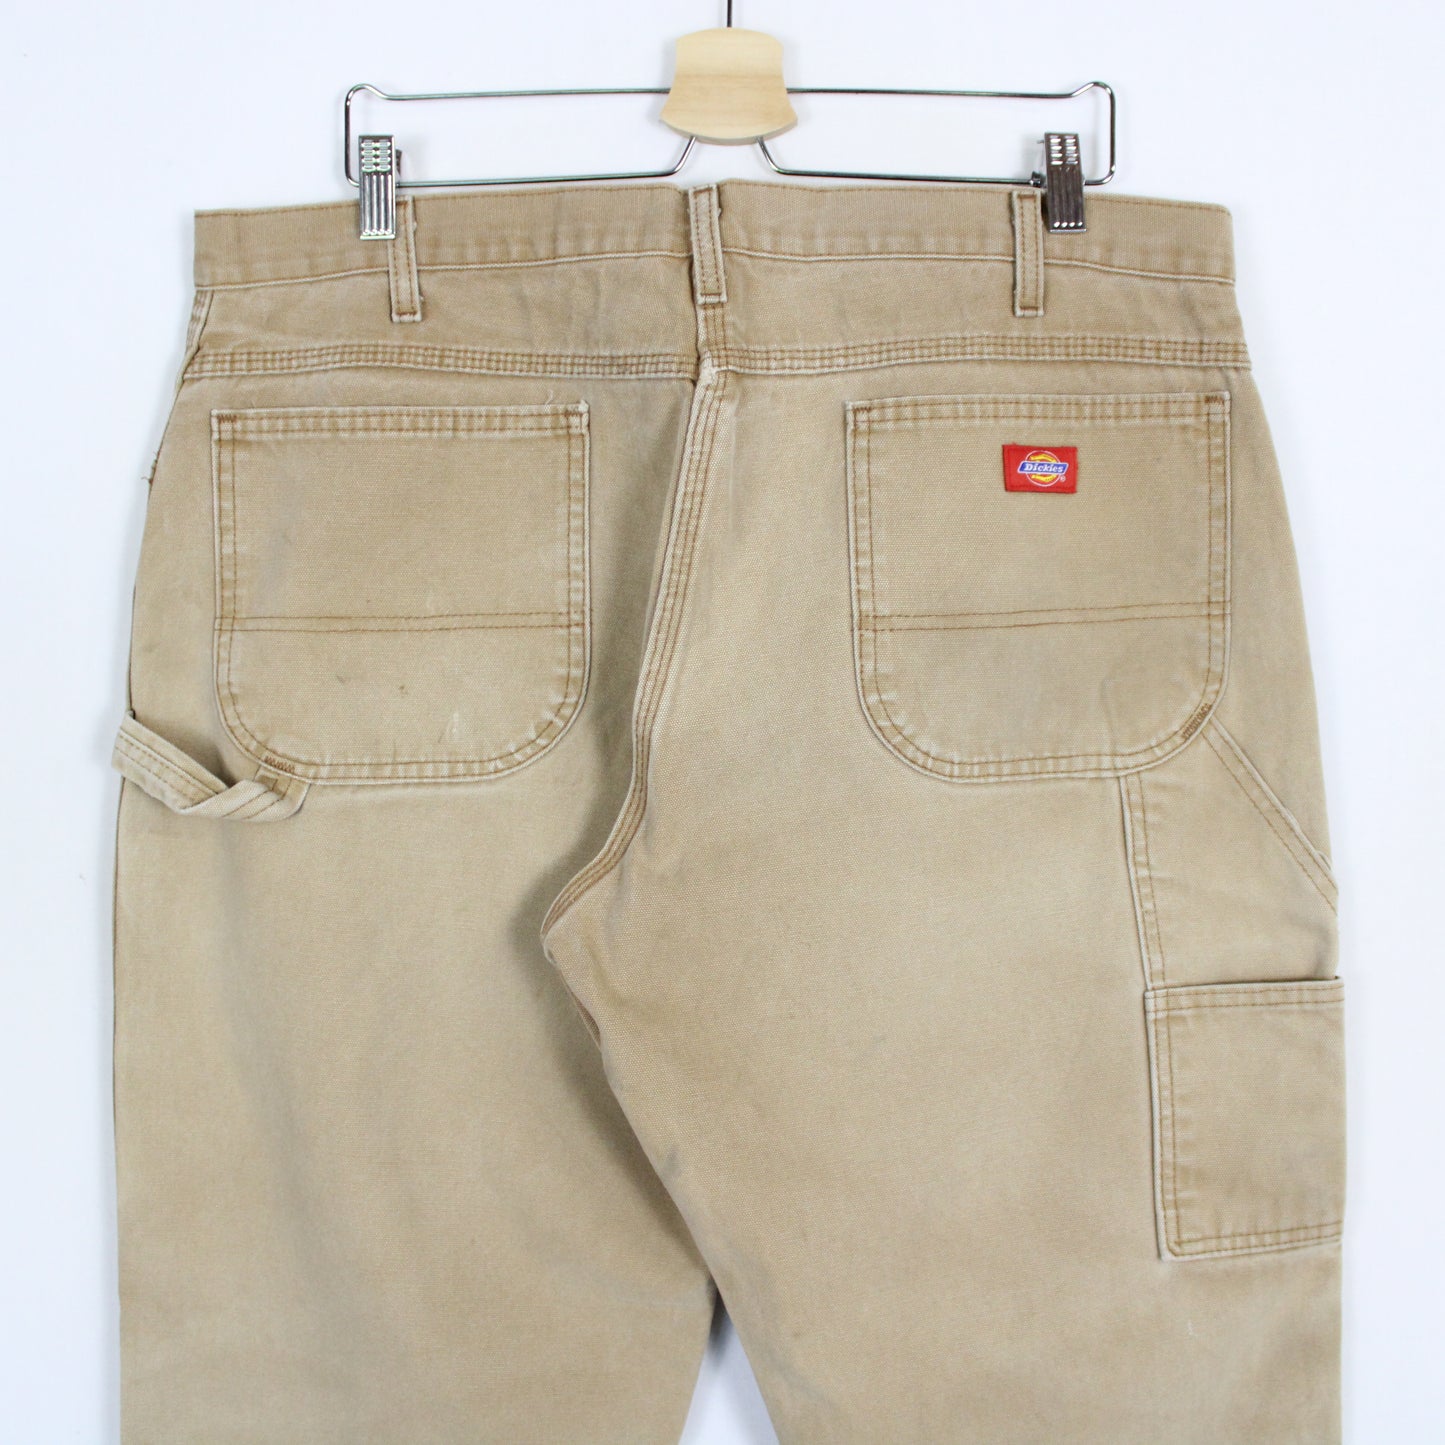 Vintage Dickies Carpenter Pants - 38x30